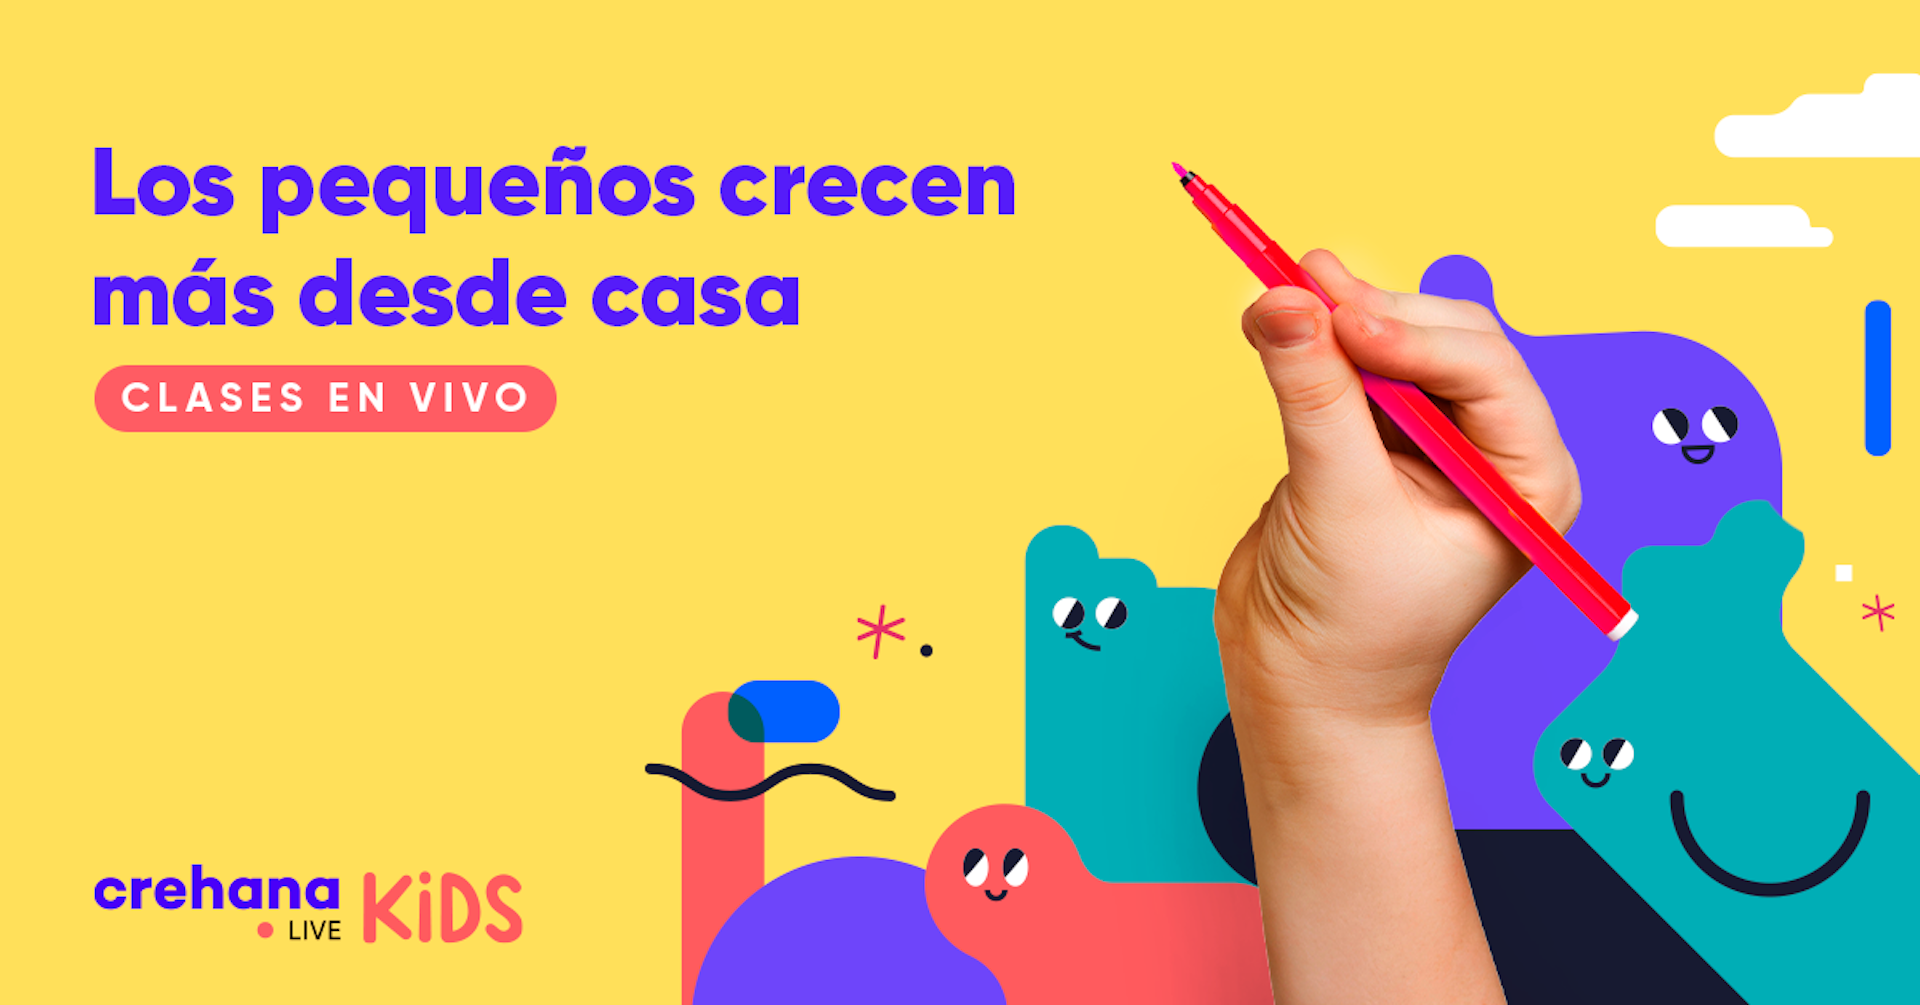 Crehana Live Kids, una nueva sección gratuita para niños y niñas